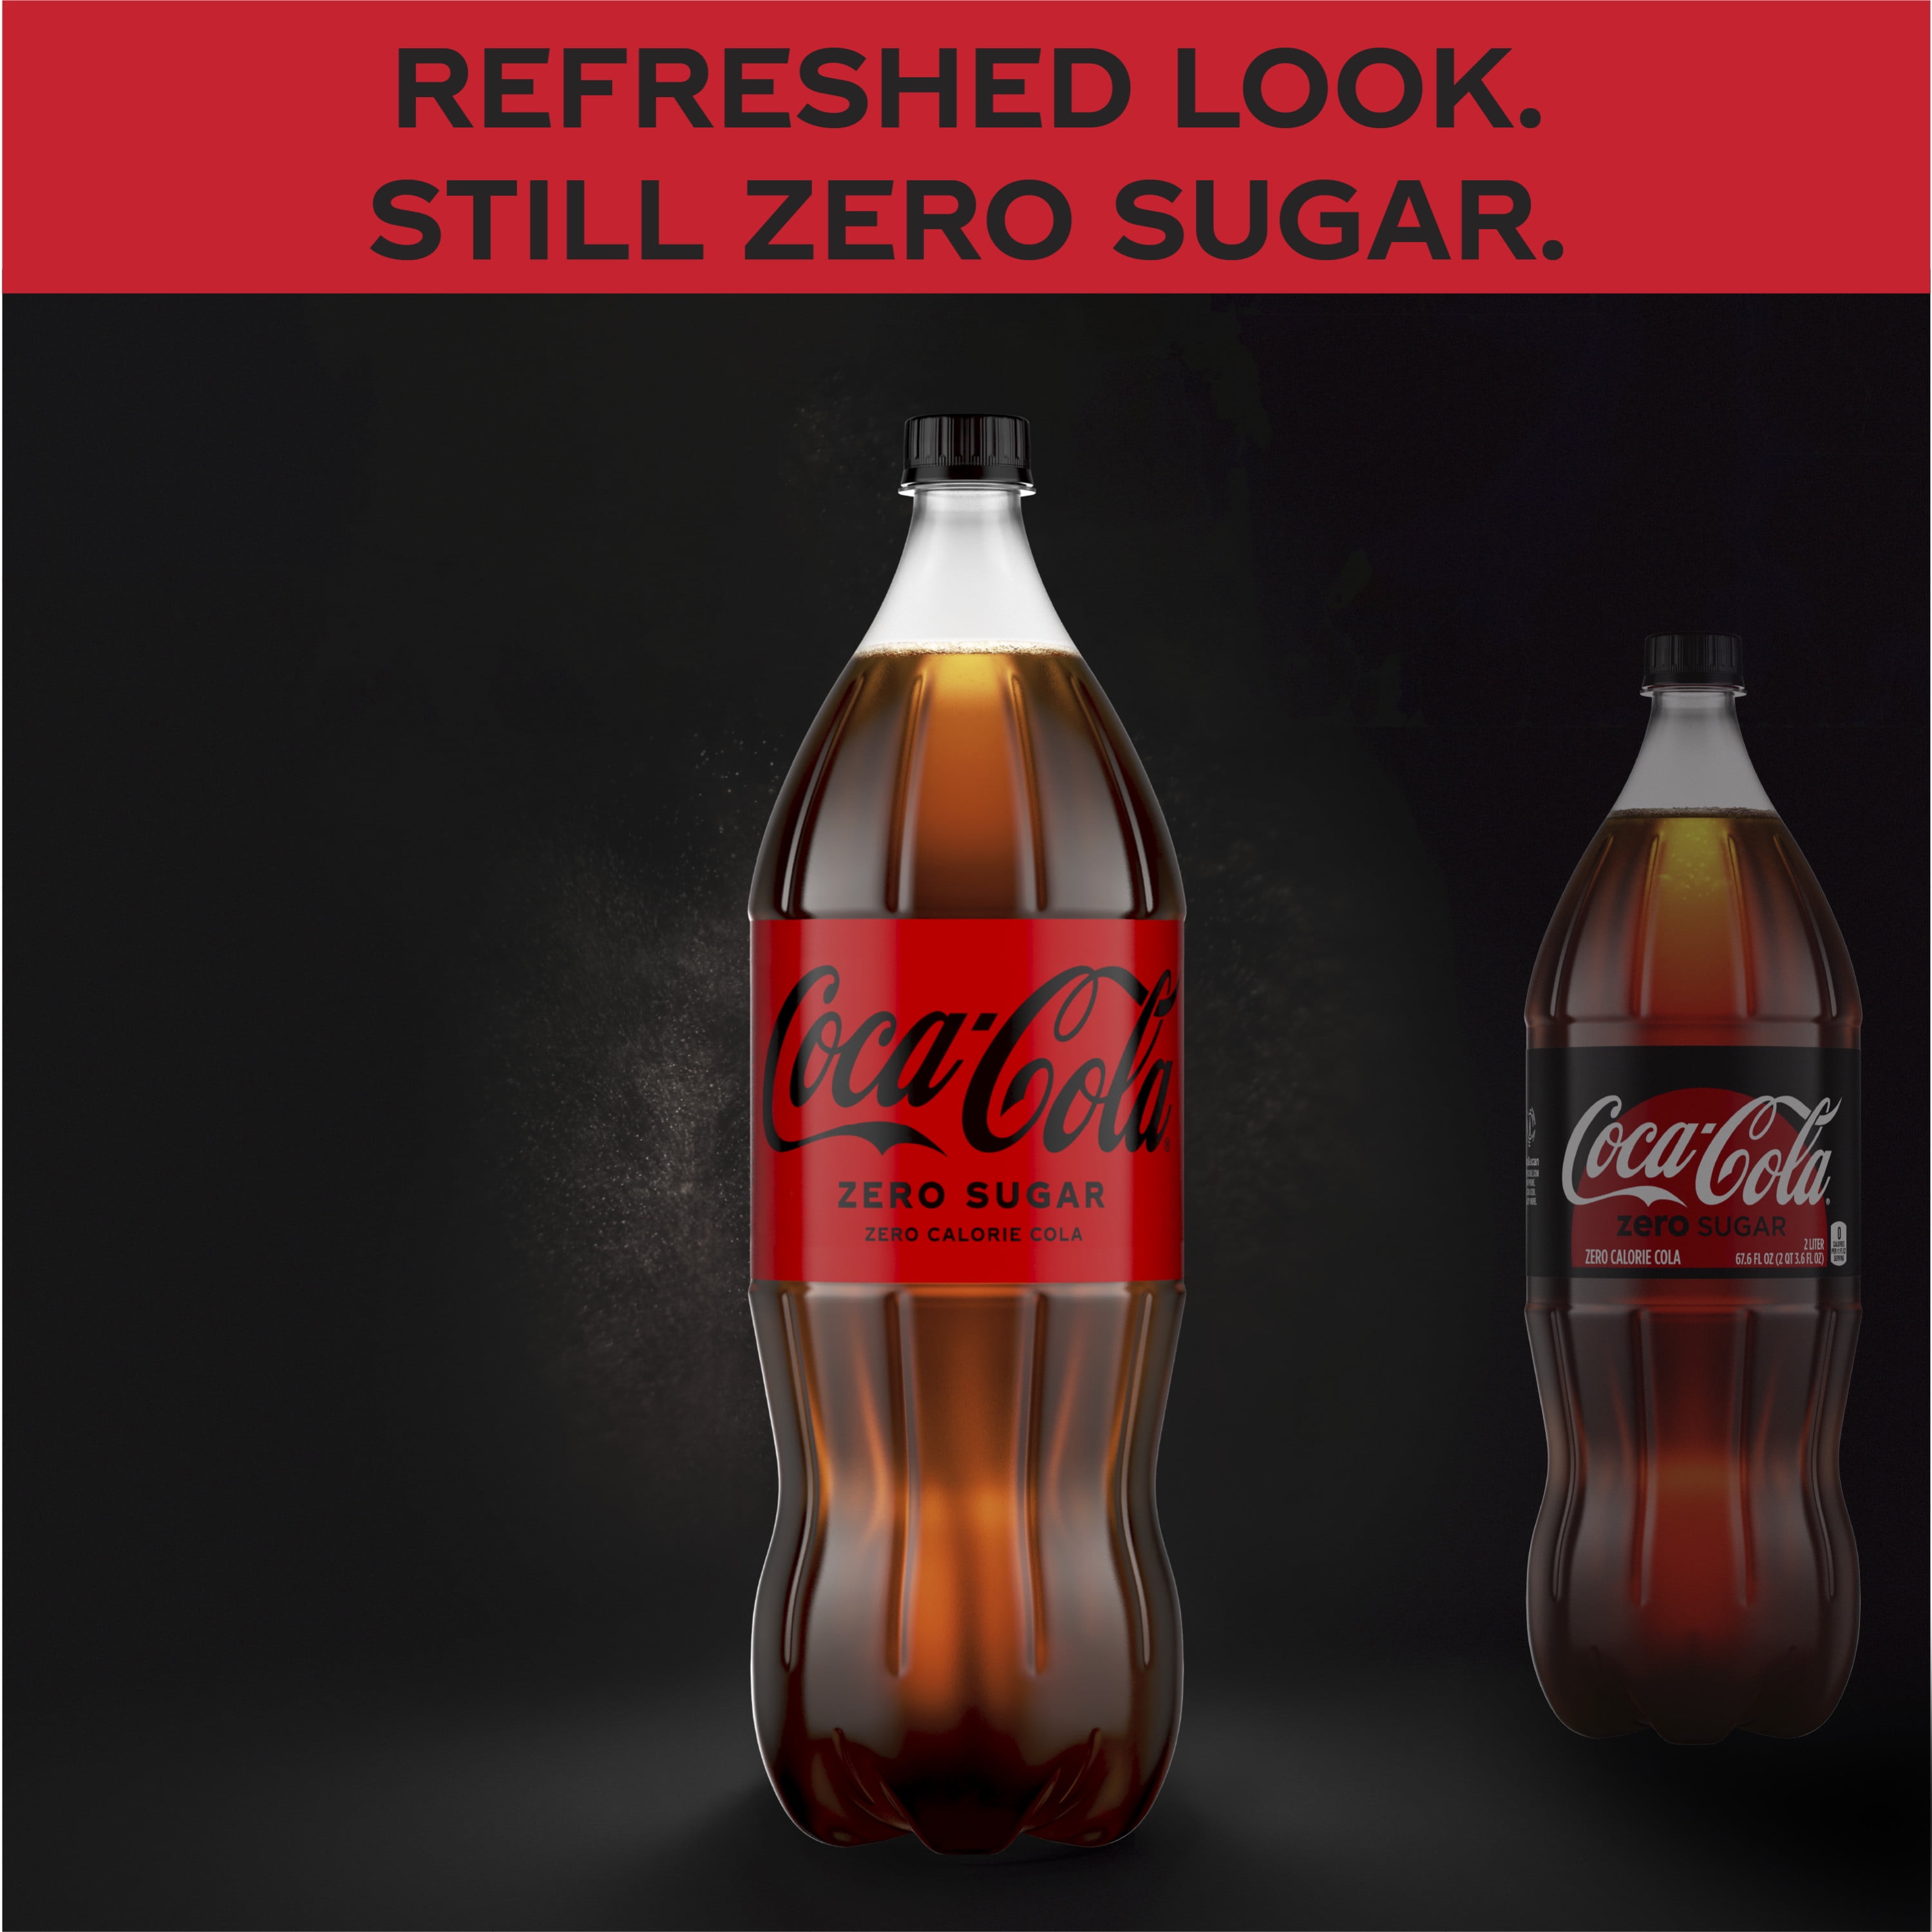 Coca Cola Zero 2 litros - El Dorado